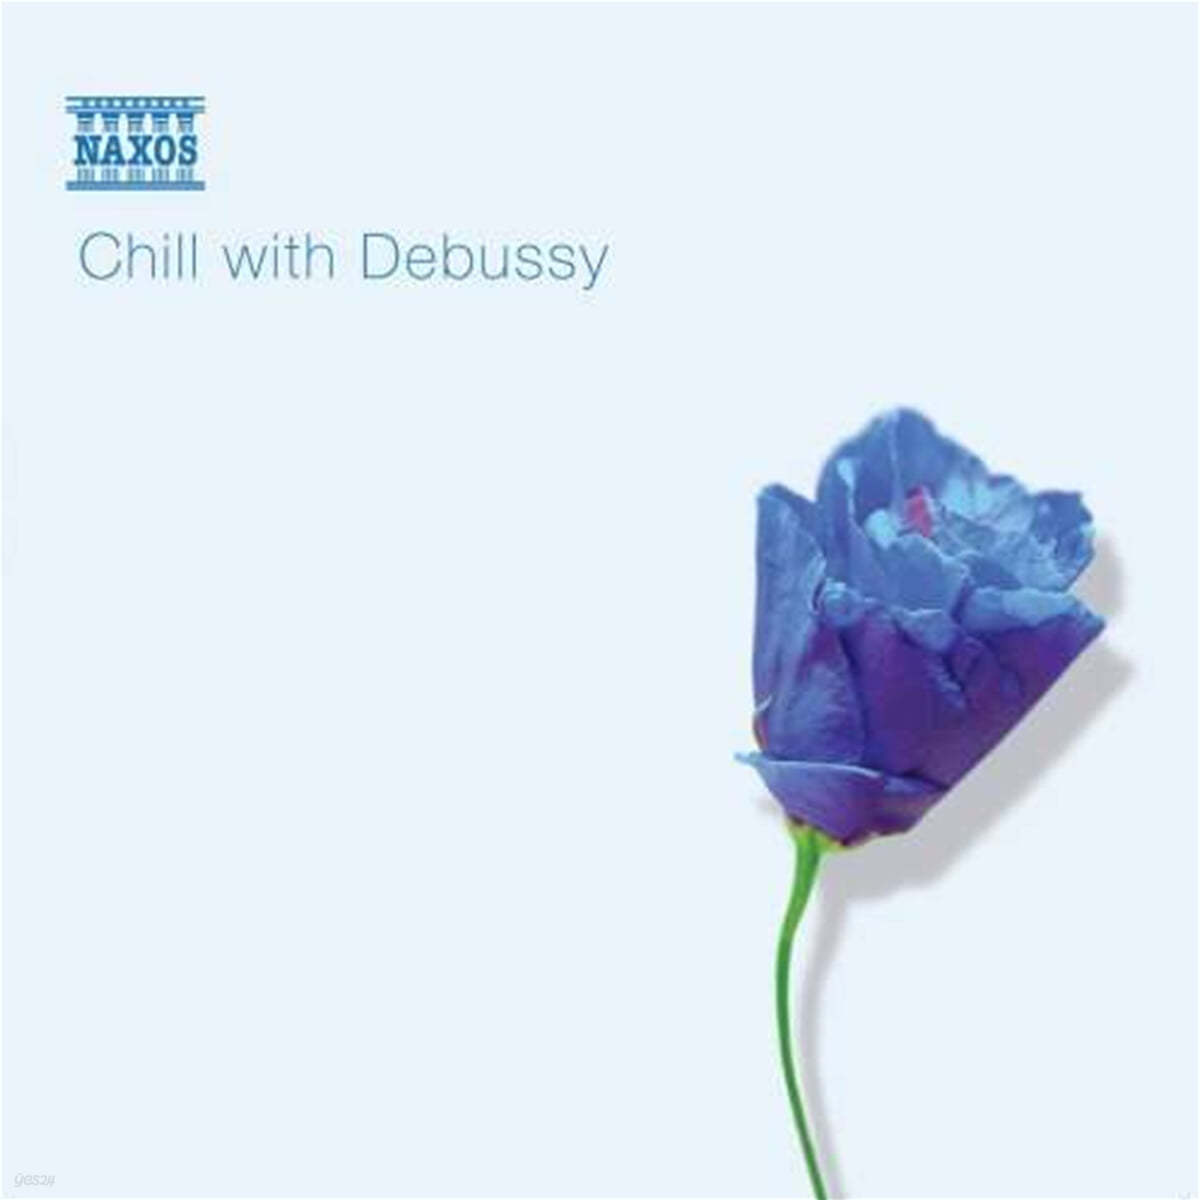 드뷔시 컴필레이션 - 칠 위드 드뷔시 (Chill With Debussy) 